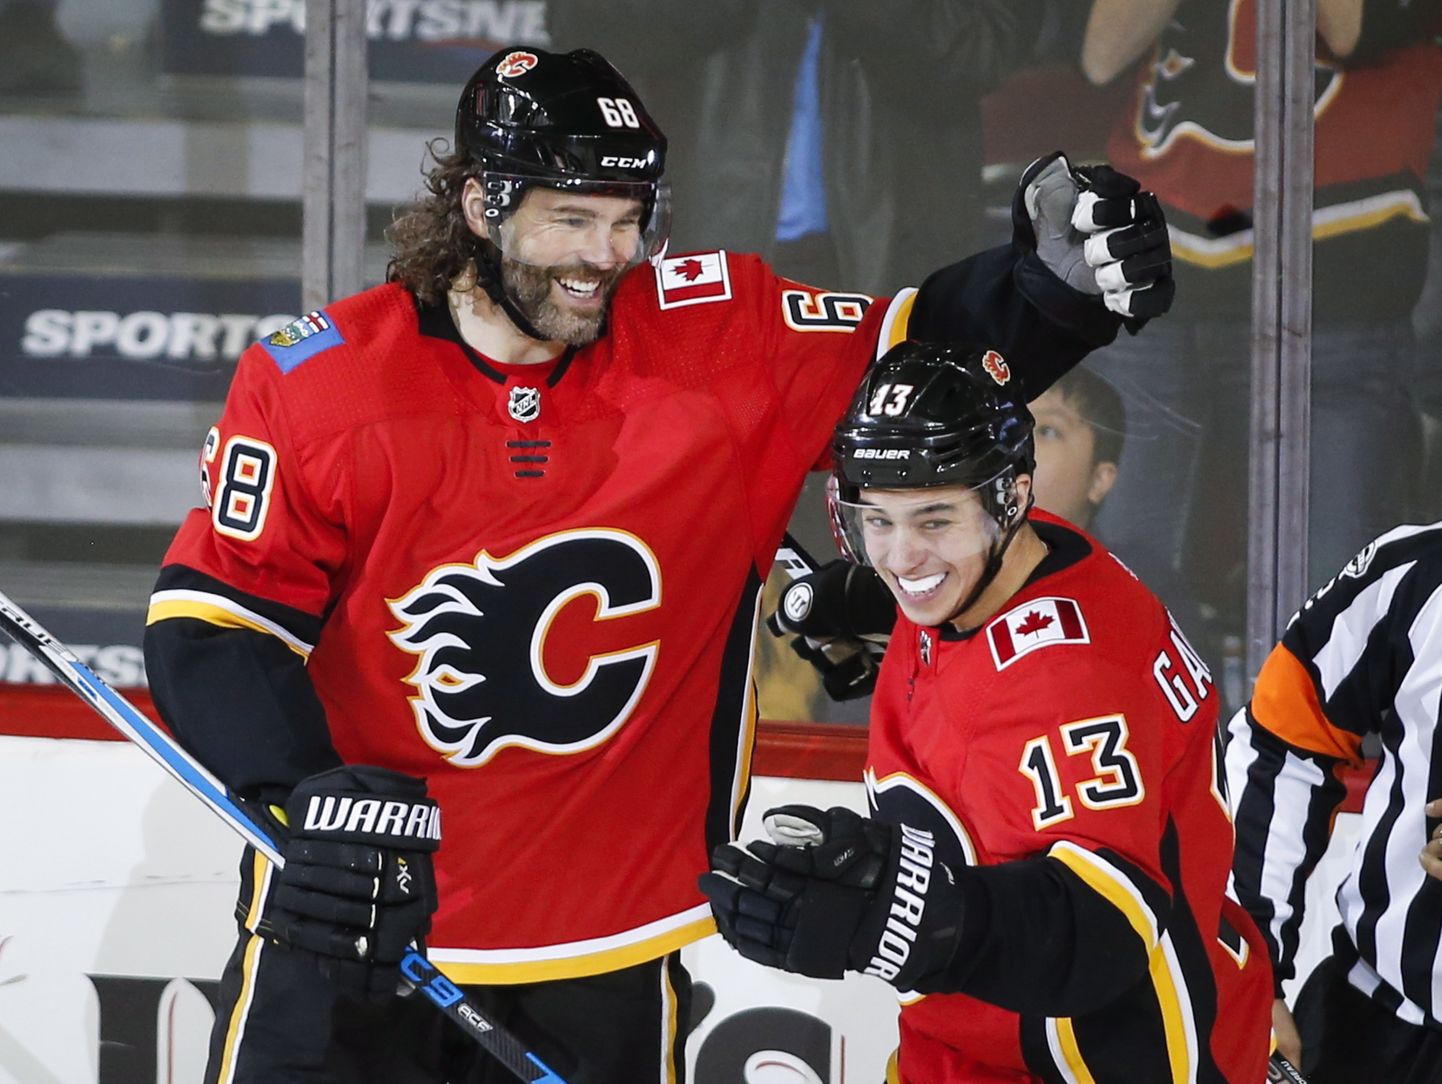 Jaromir Jagr (vasakul) mängis oma viimasel NHLi-hooajal (2017/18) Calgary Flamesis.